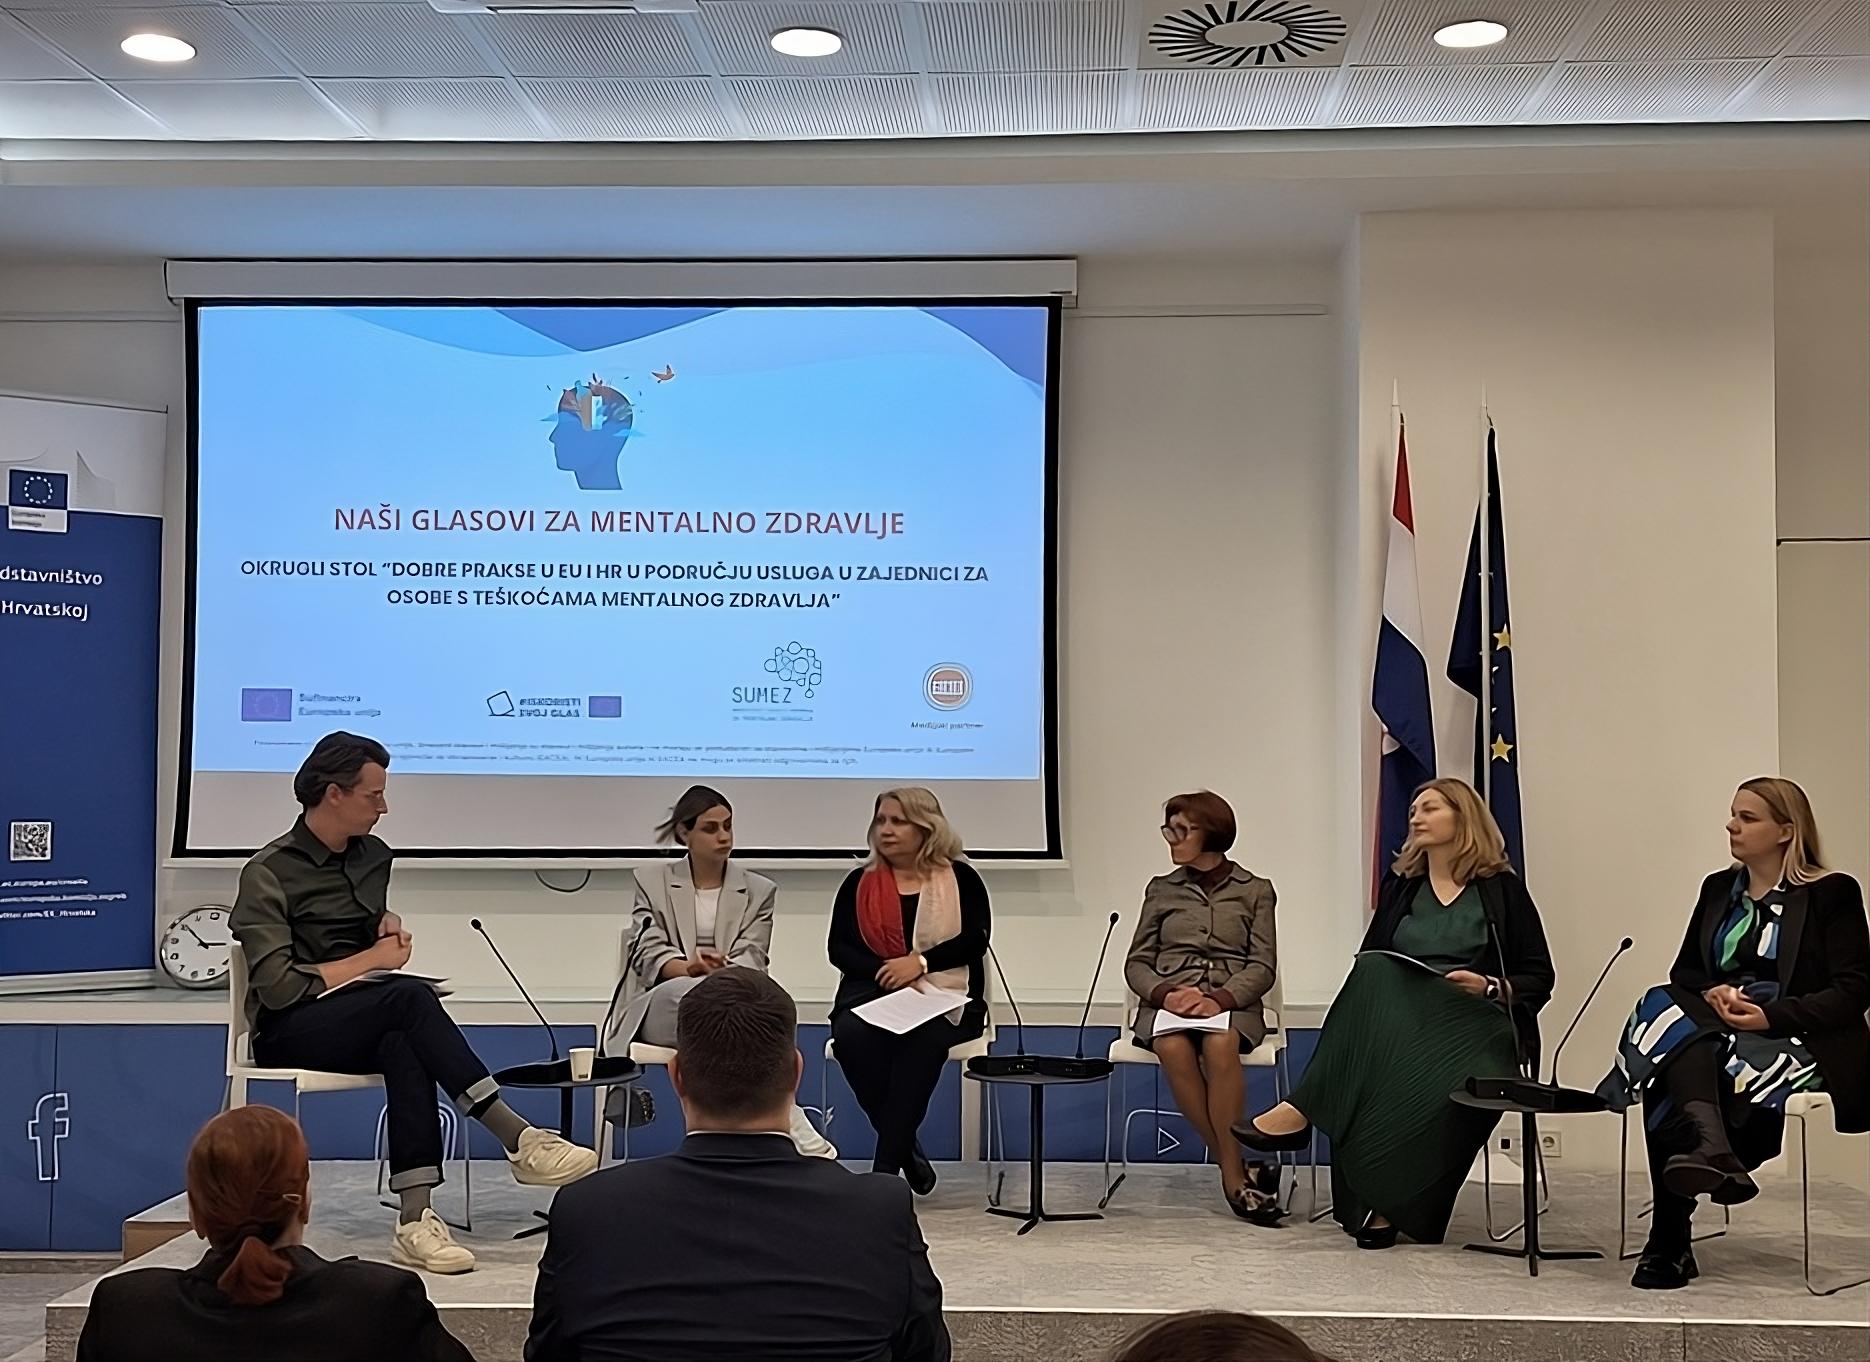 Ova slika prikazuje panel diskusiju s pet osoba koje sjede na stolicama ispred plavog zida s projekcijskim ekranom. Na ekranu je prezentacija, a sudionici se čini da su uključeni u raspravu ili prezentaciju. Desno od njih su zastave, uključujući zastavu Europske unije i zastavu Hrvatske.